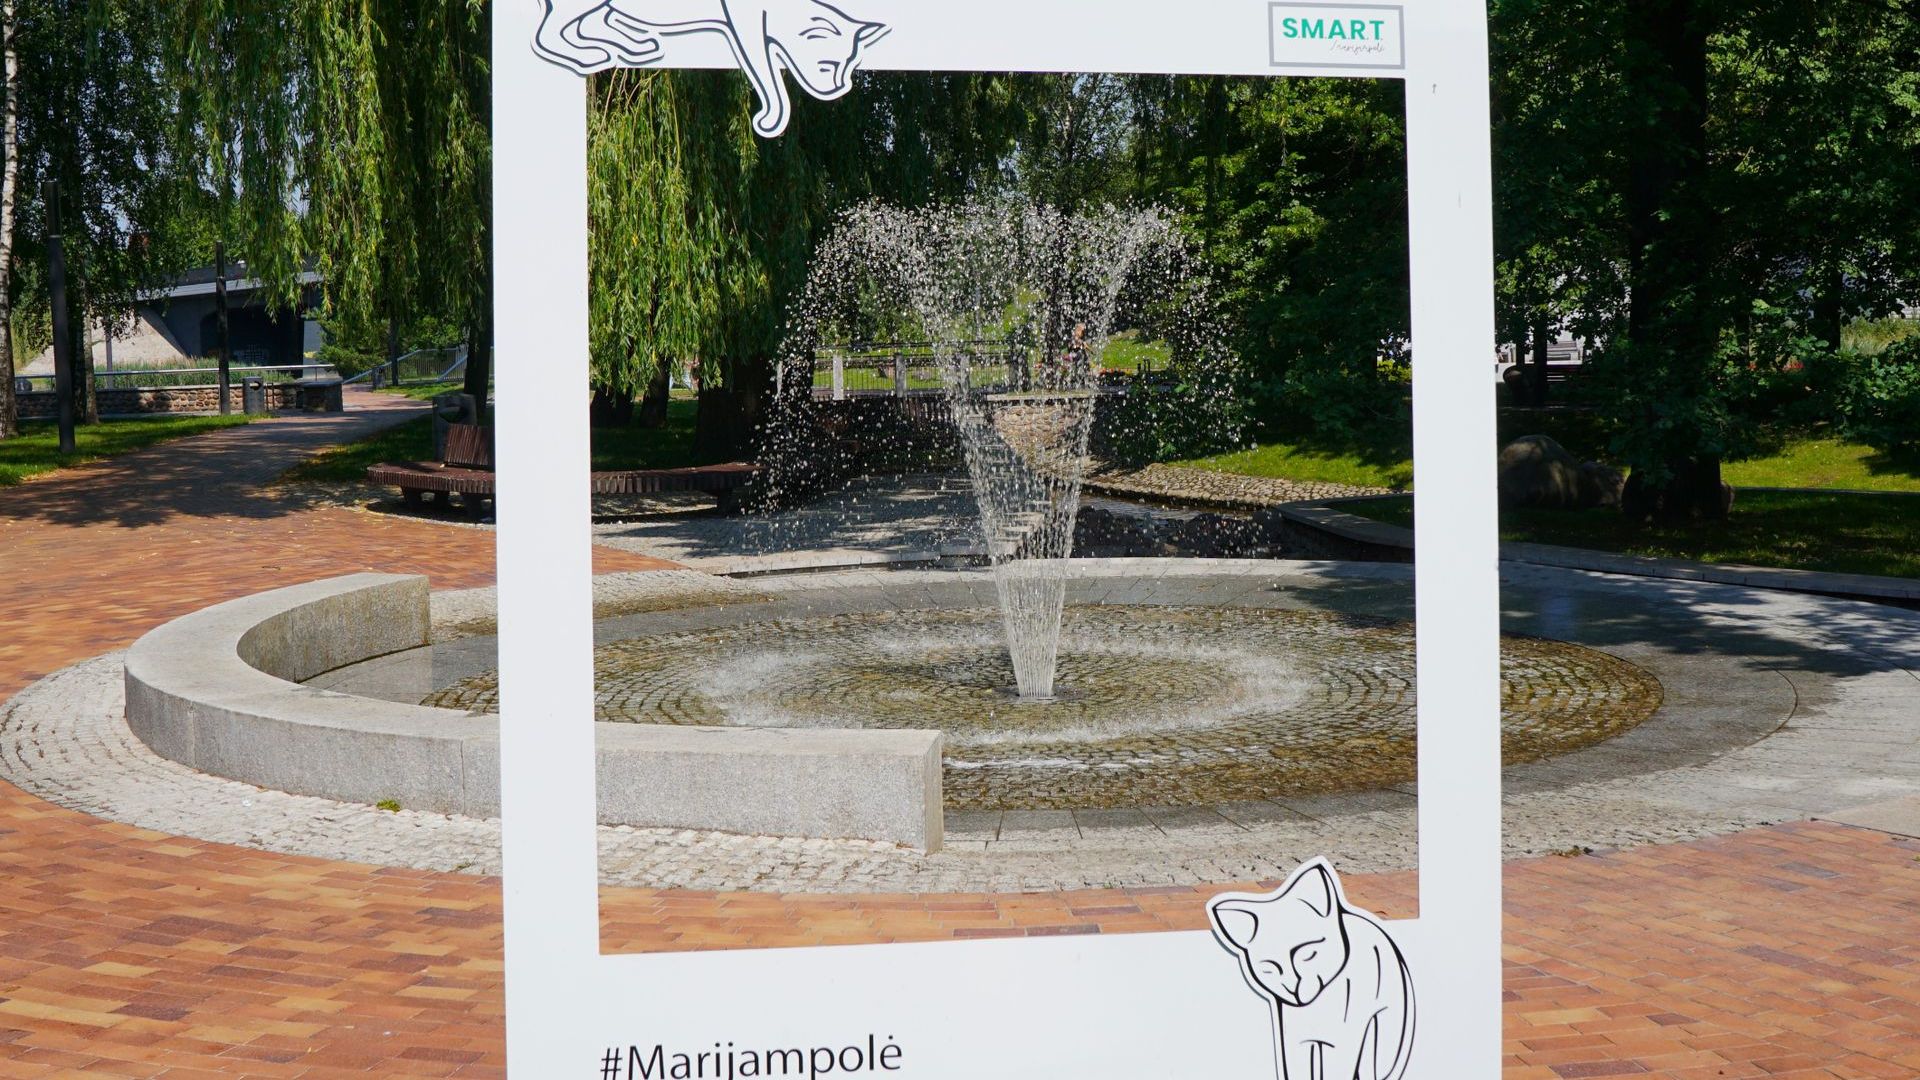 Marijampolė Poetry Park